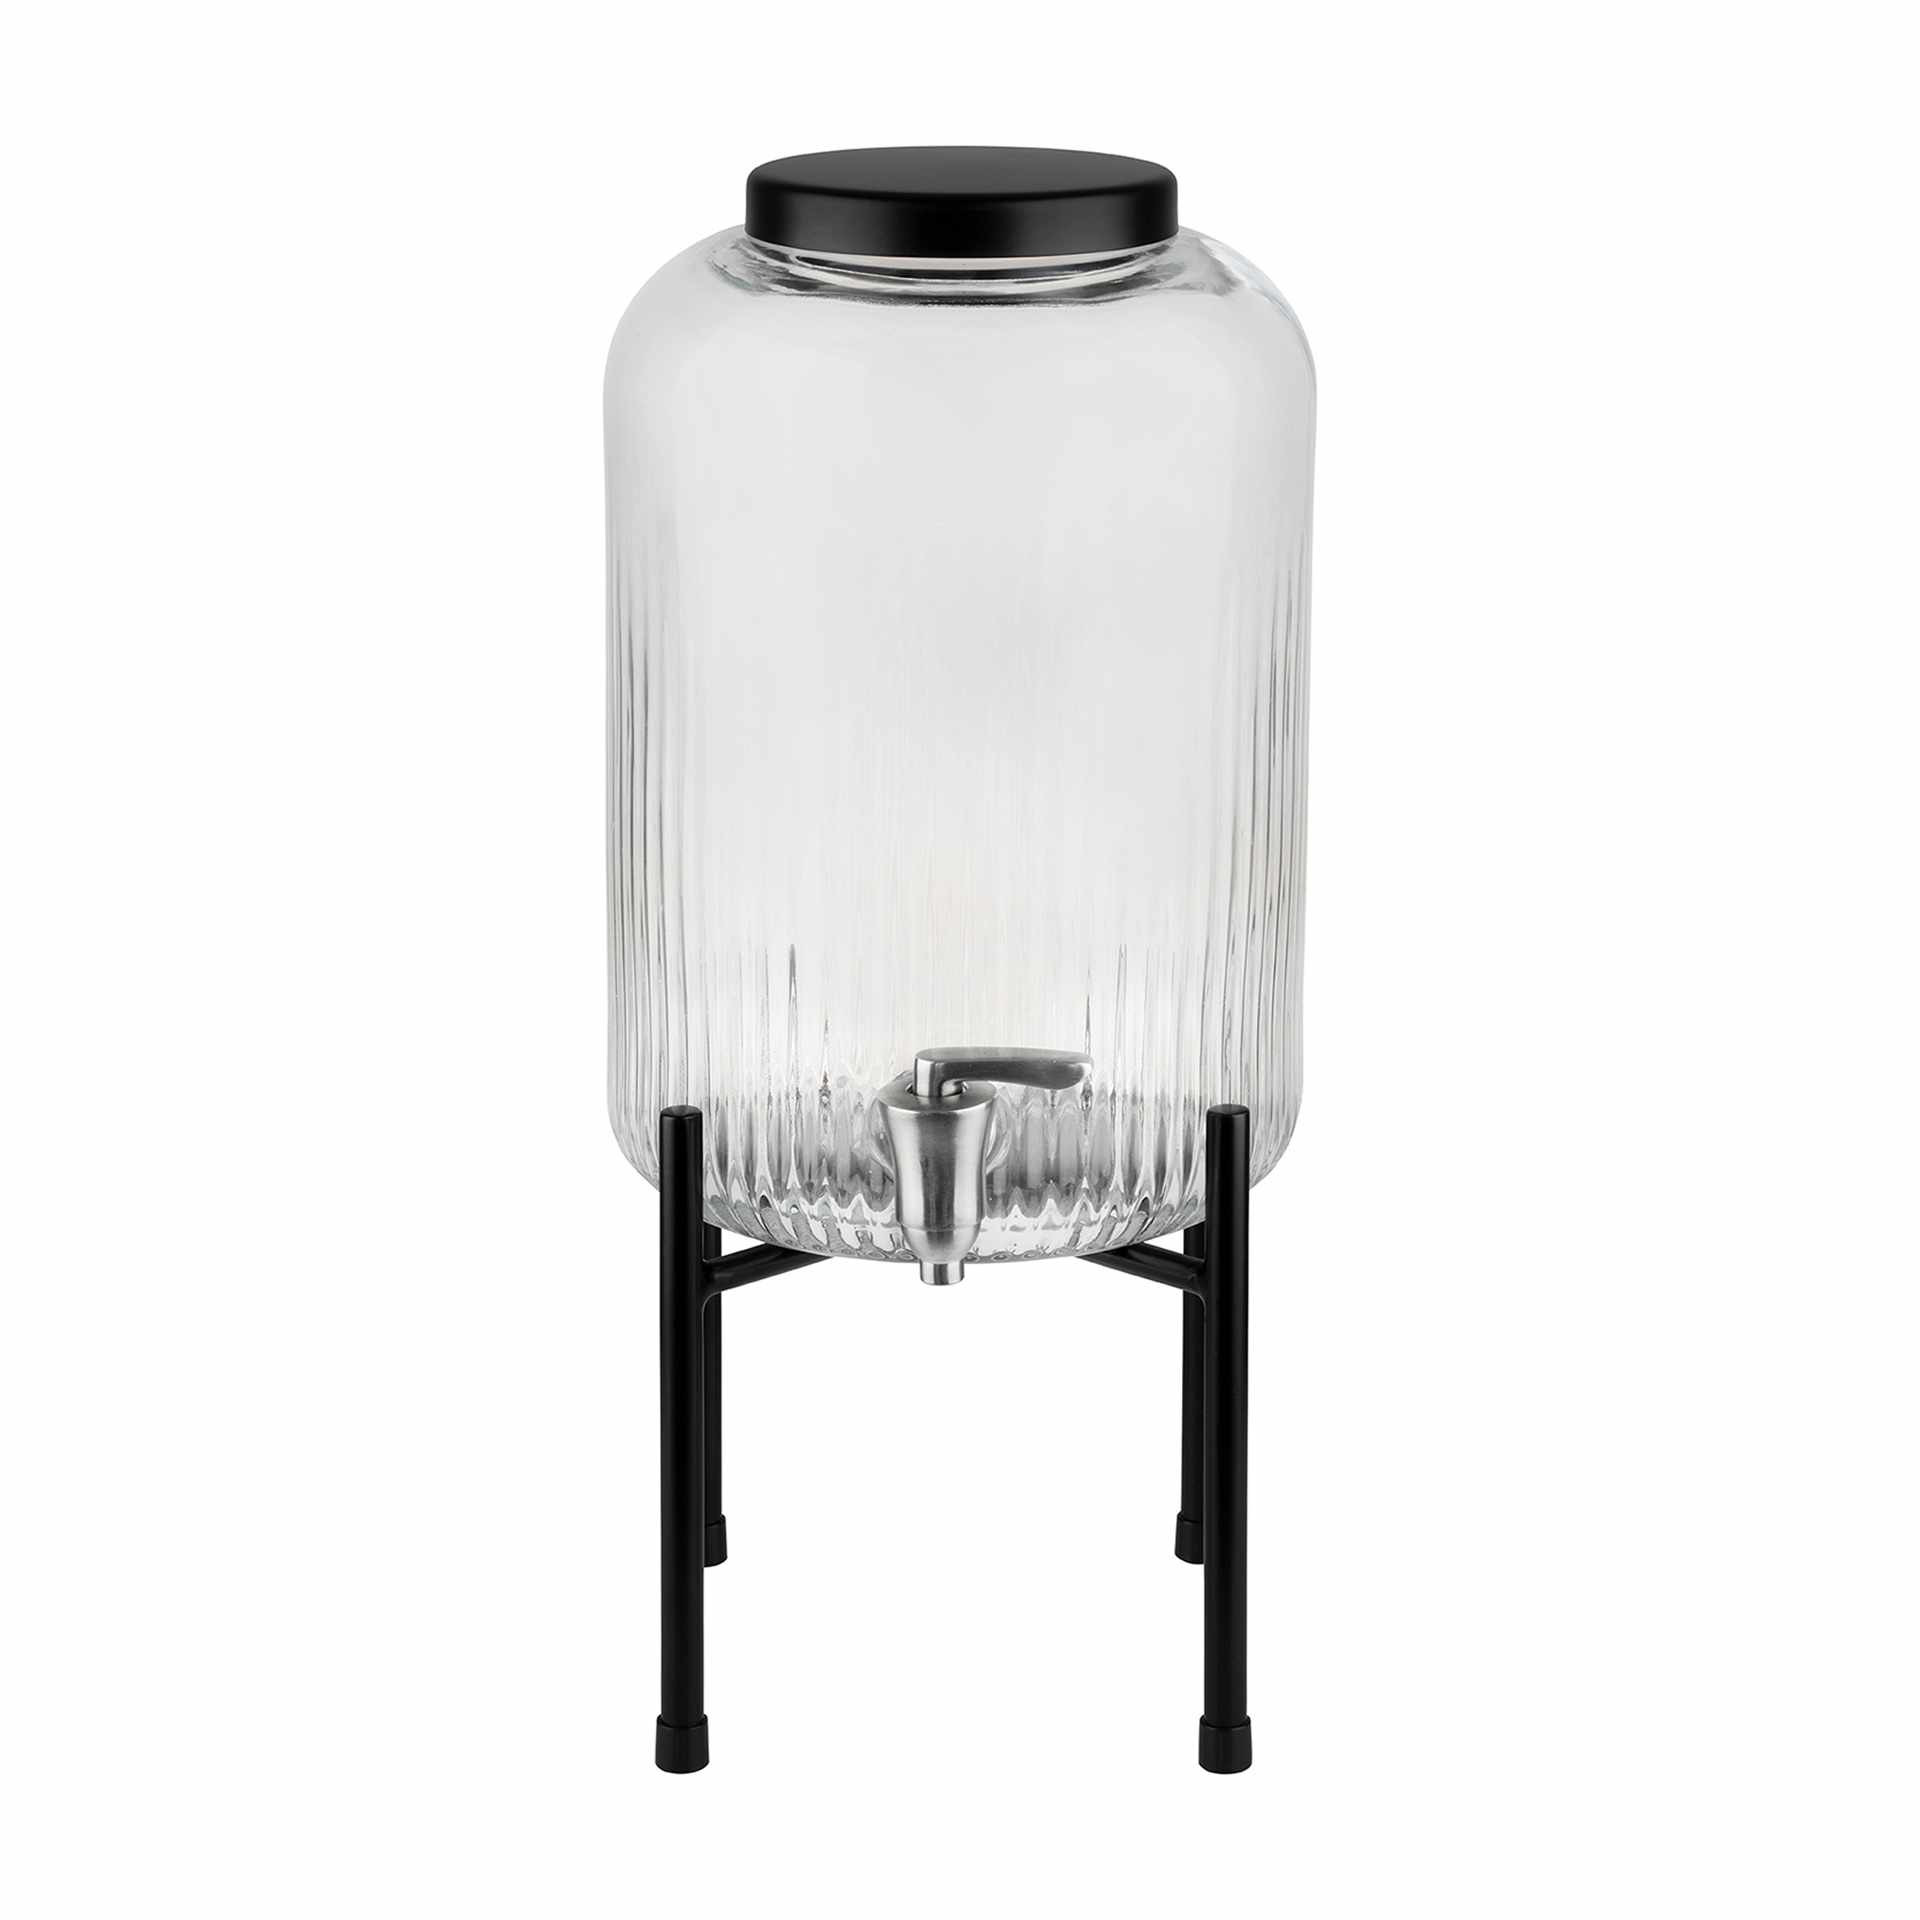 Getränkespender - Serie Industrial - schwarz - Höhe 45,0 cm - Ø 20 cm - Inhalt 7,0 l - Glas - 10450-B